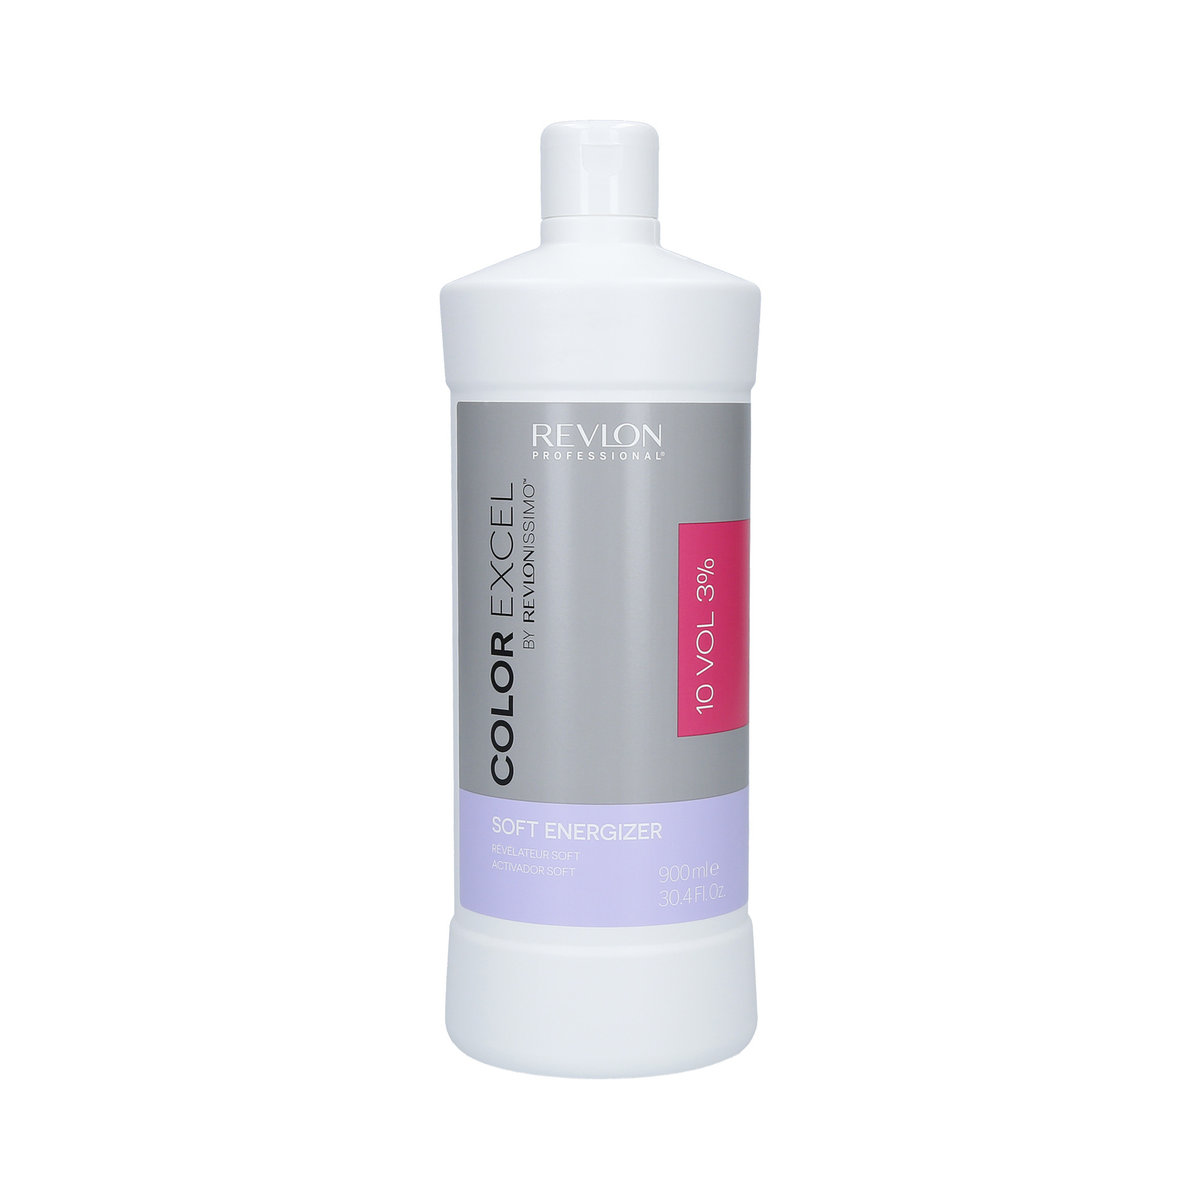 Revlon Professional, Aktywator do koloryzacji włosów 3%, 900 ml